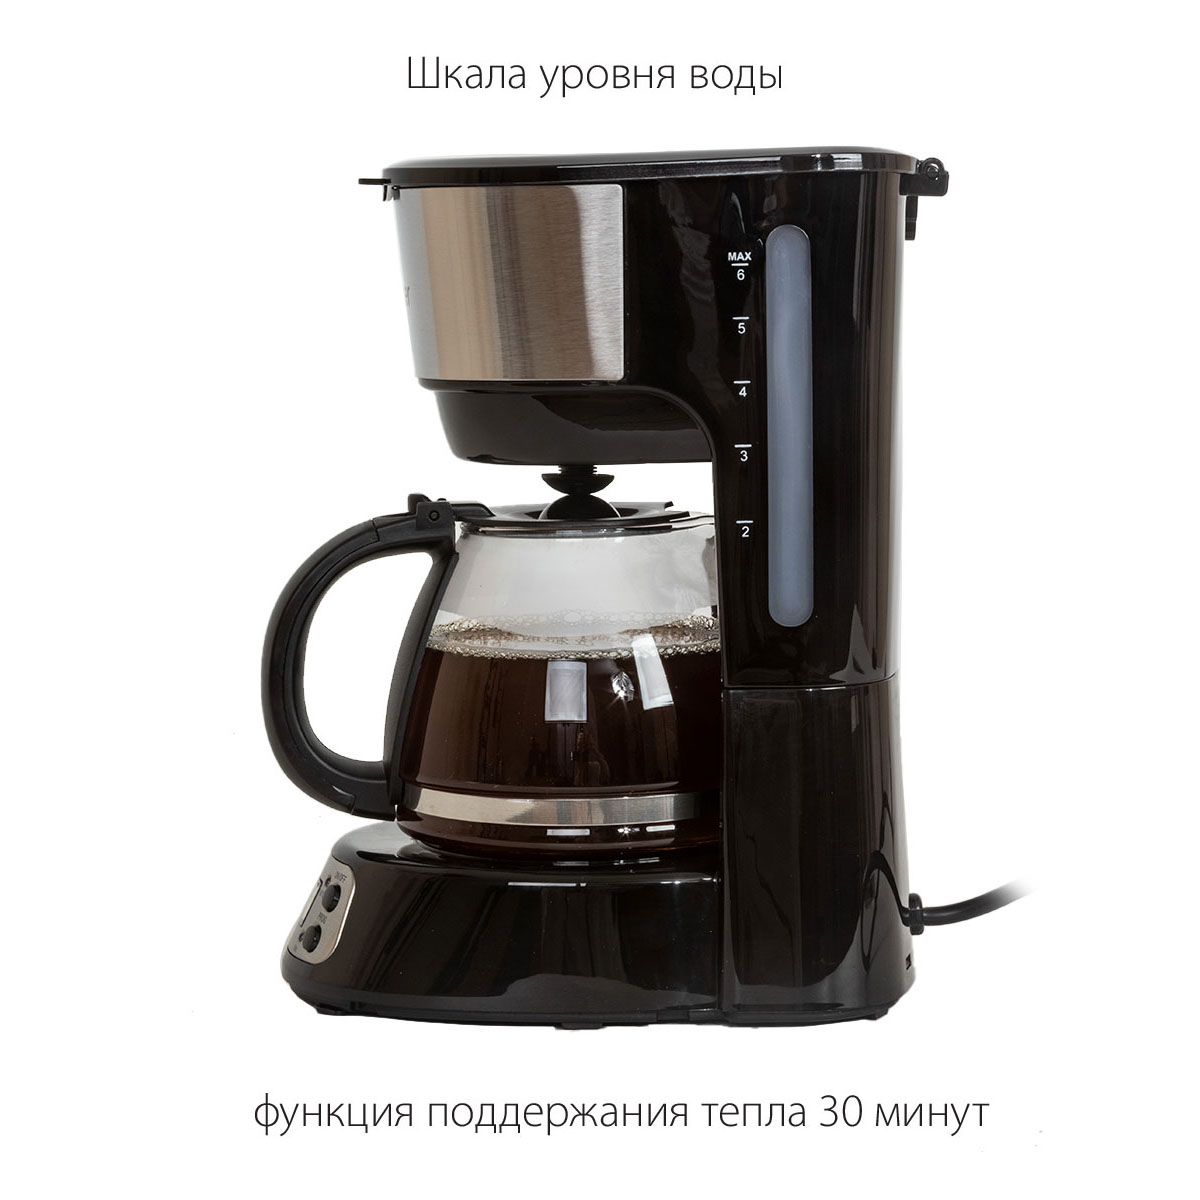 Капельная кофеварка Pioneer CM053D